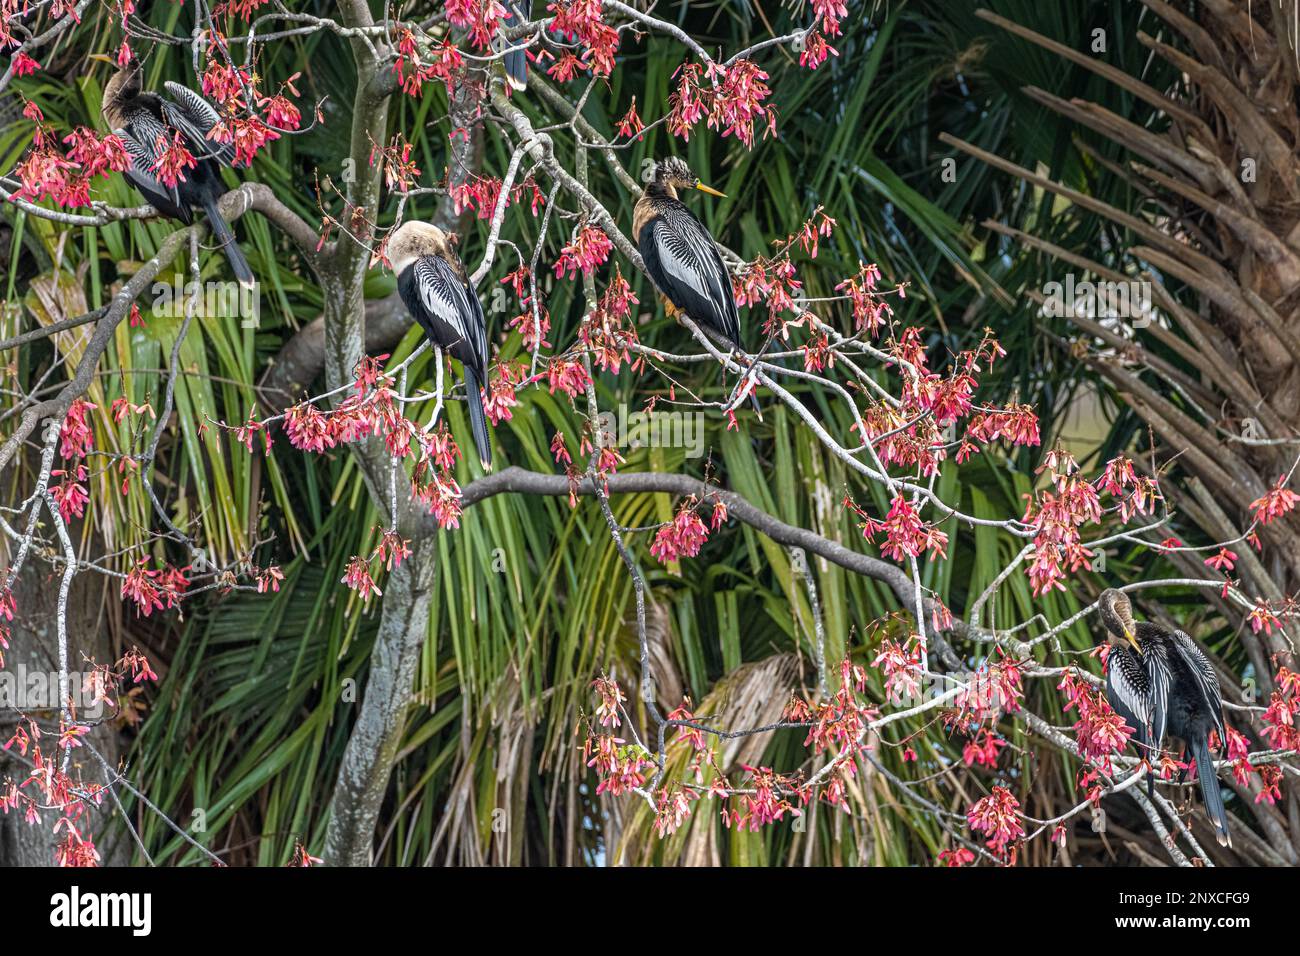 Anhingas (auch bekannt als Wassertruthühner, Schlangenvögel oder amerikanische Dartvögel) in einem blühenden Baum im Bird Island Park in Ponte Vedra Beach, Florida. (USA) Stockfoto